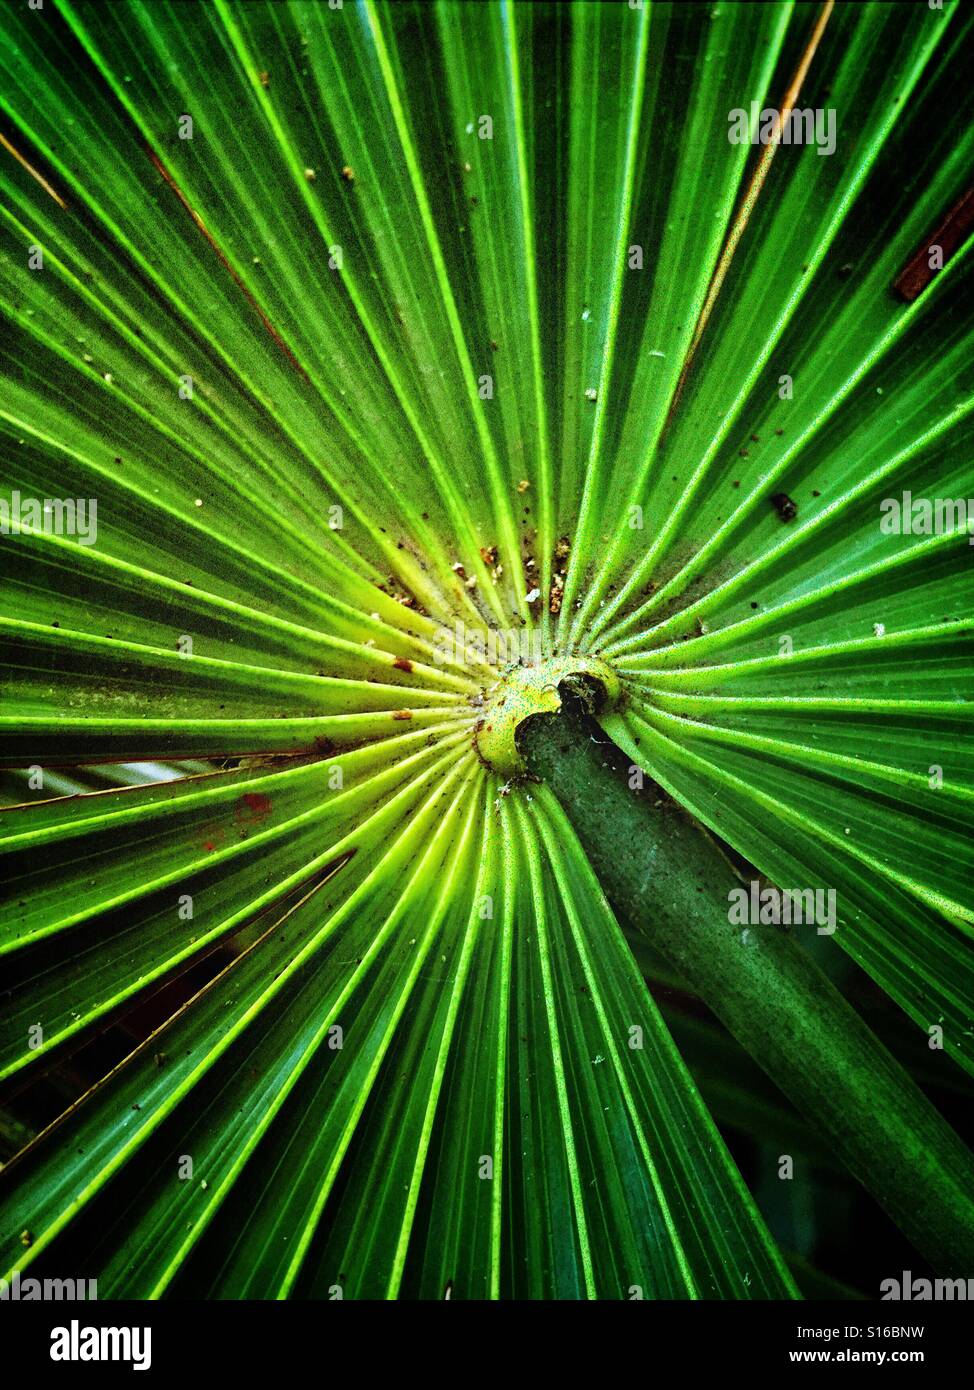 Il modello di un Trachycarpus, o mulino a vento di foglie di palma è quasi vertiginosa e ipnotico nella sua bellezza. Foto Stock